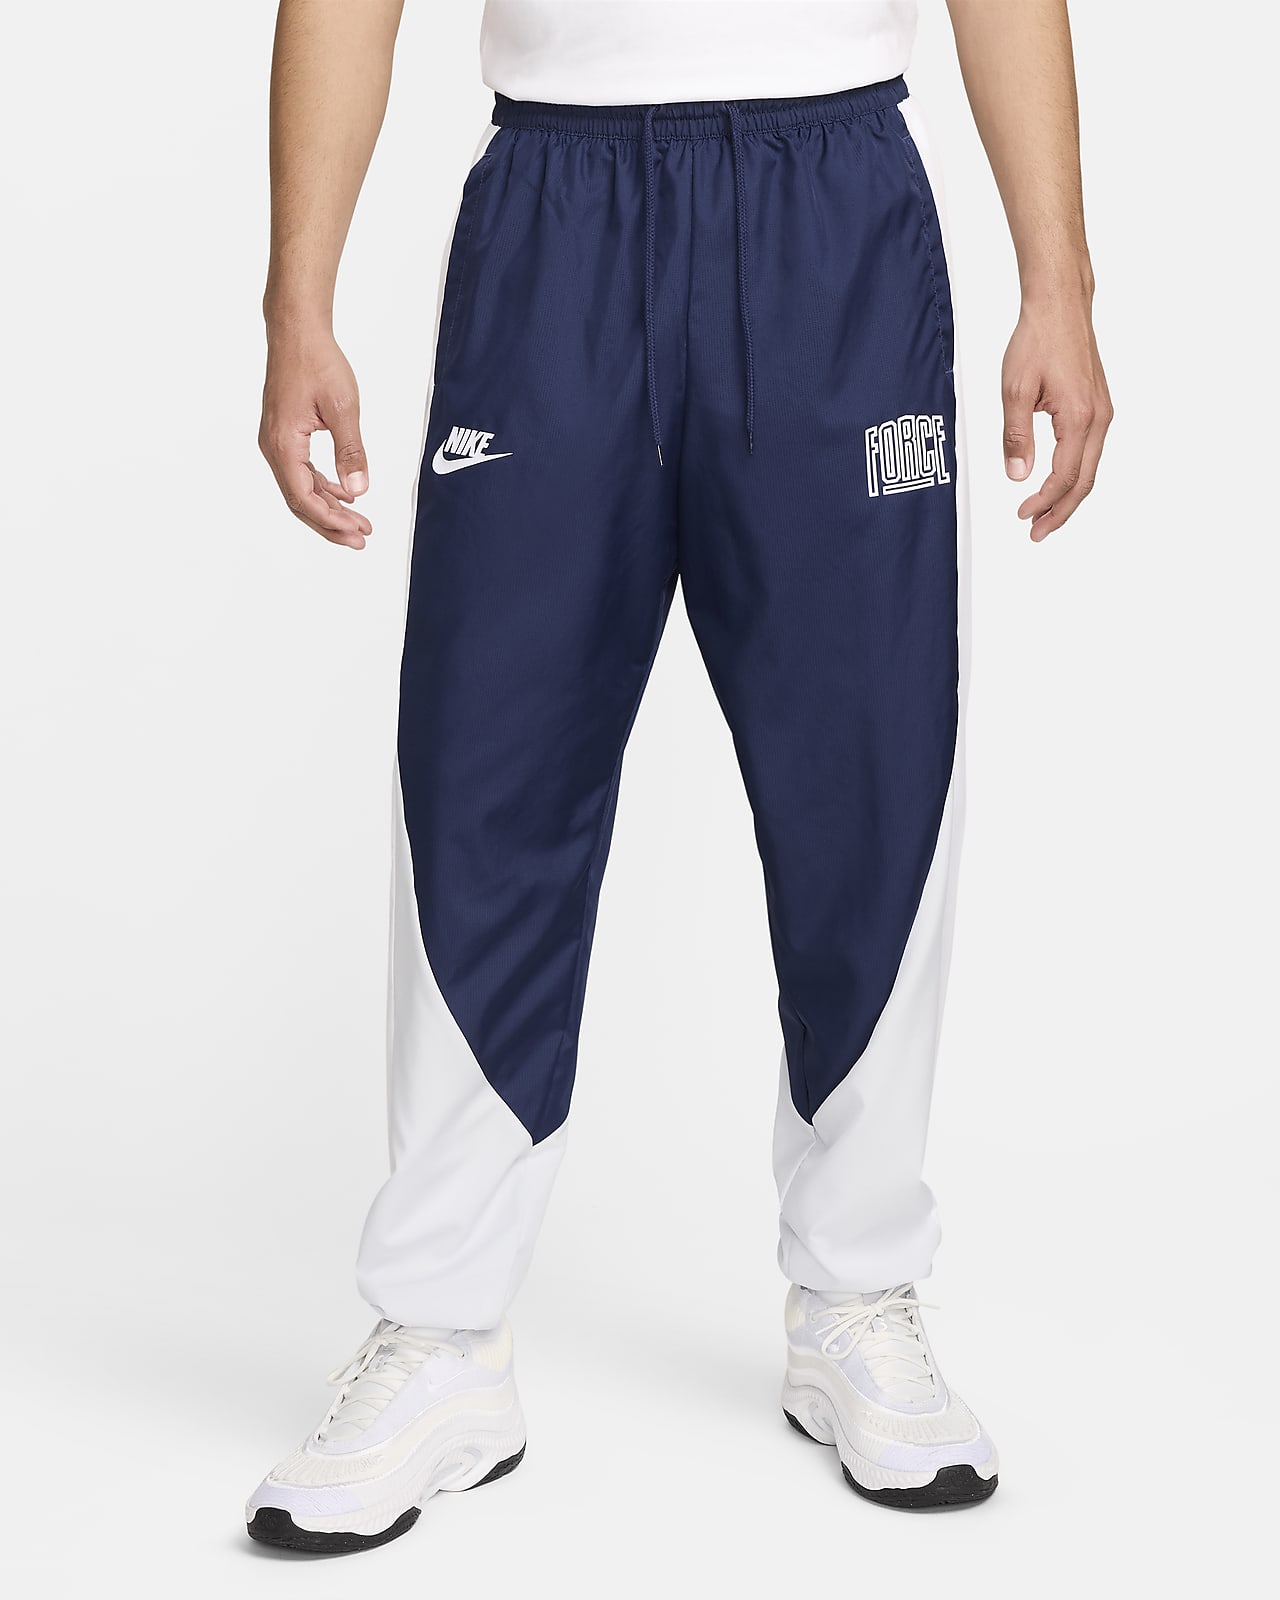 Pantalon de basket Nike Starting 5 pour homme